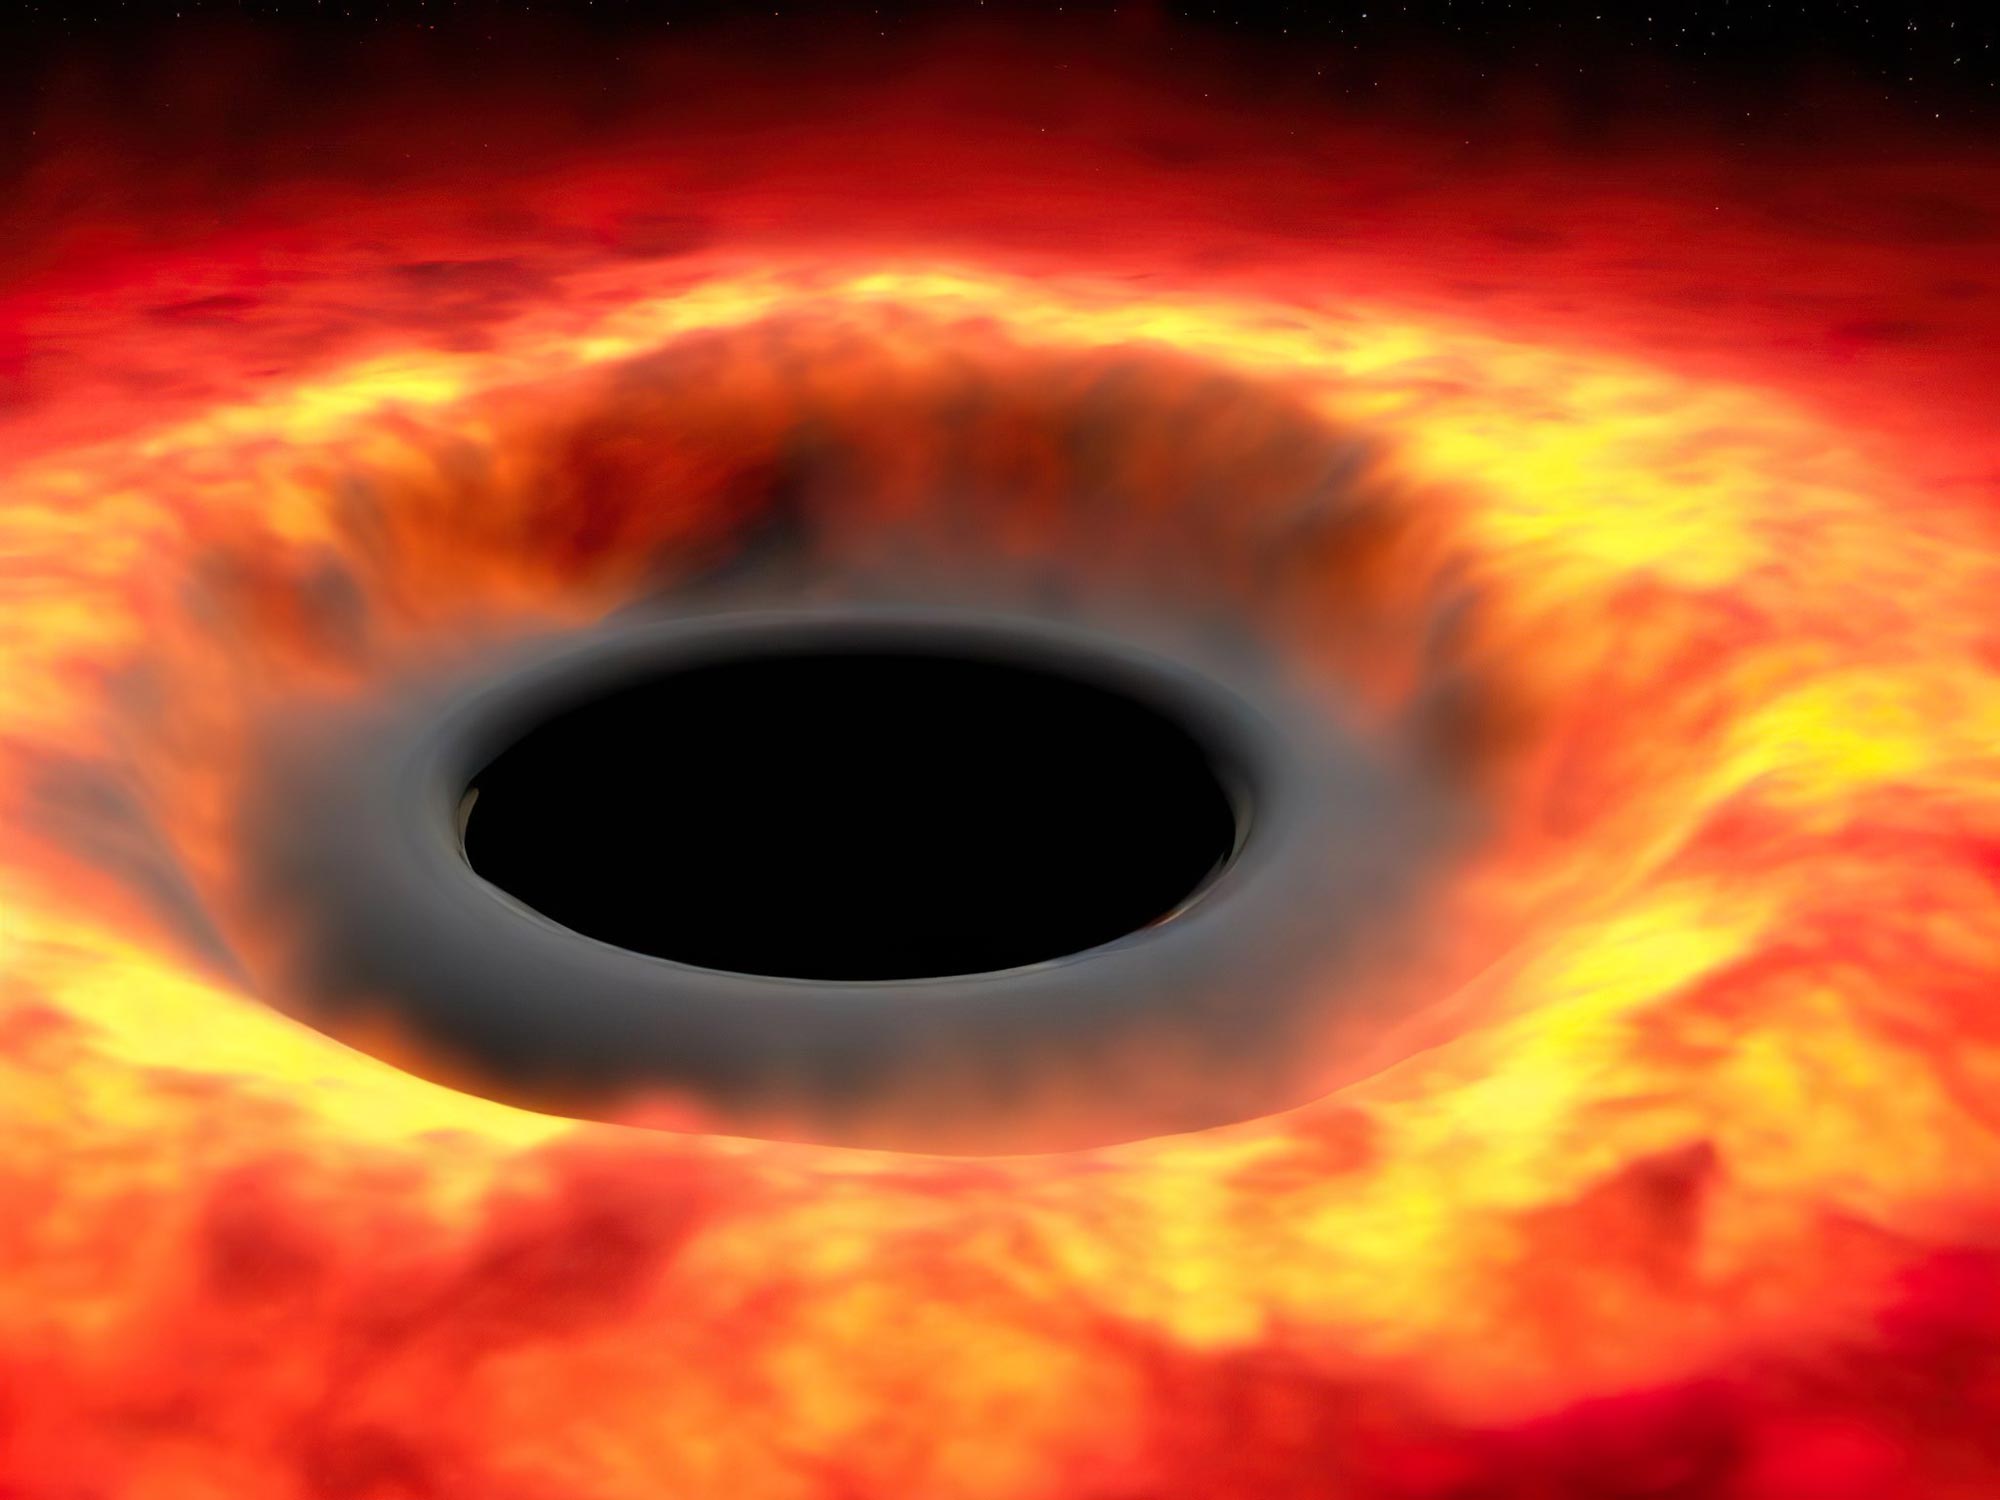 Alles im Universum ist dazu verdammt, zu verdampfen – Hawkings Strahlungstheorie beschränkt sich nicht auf Schwarze Löcher